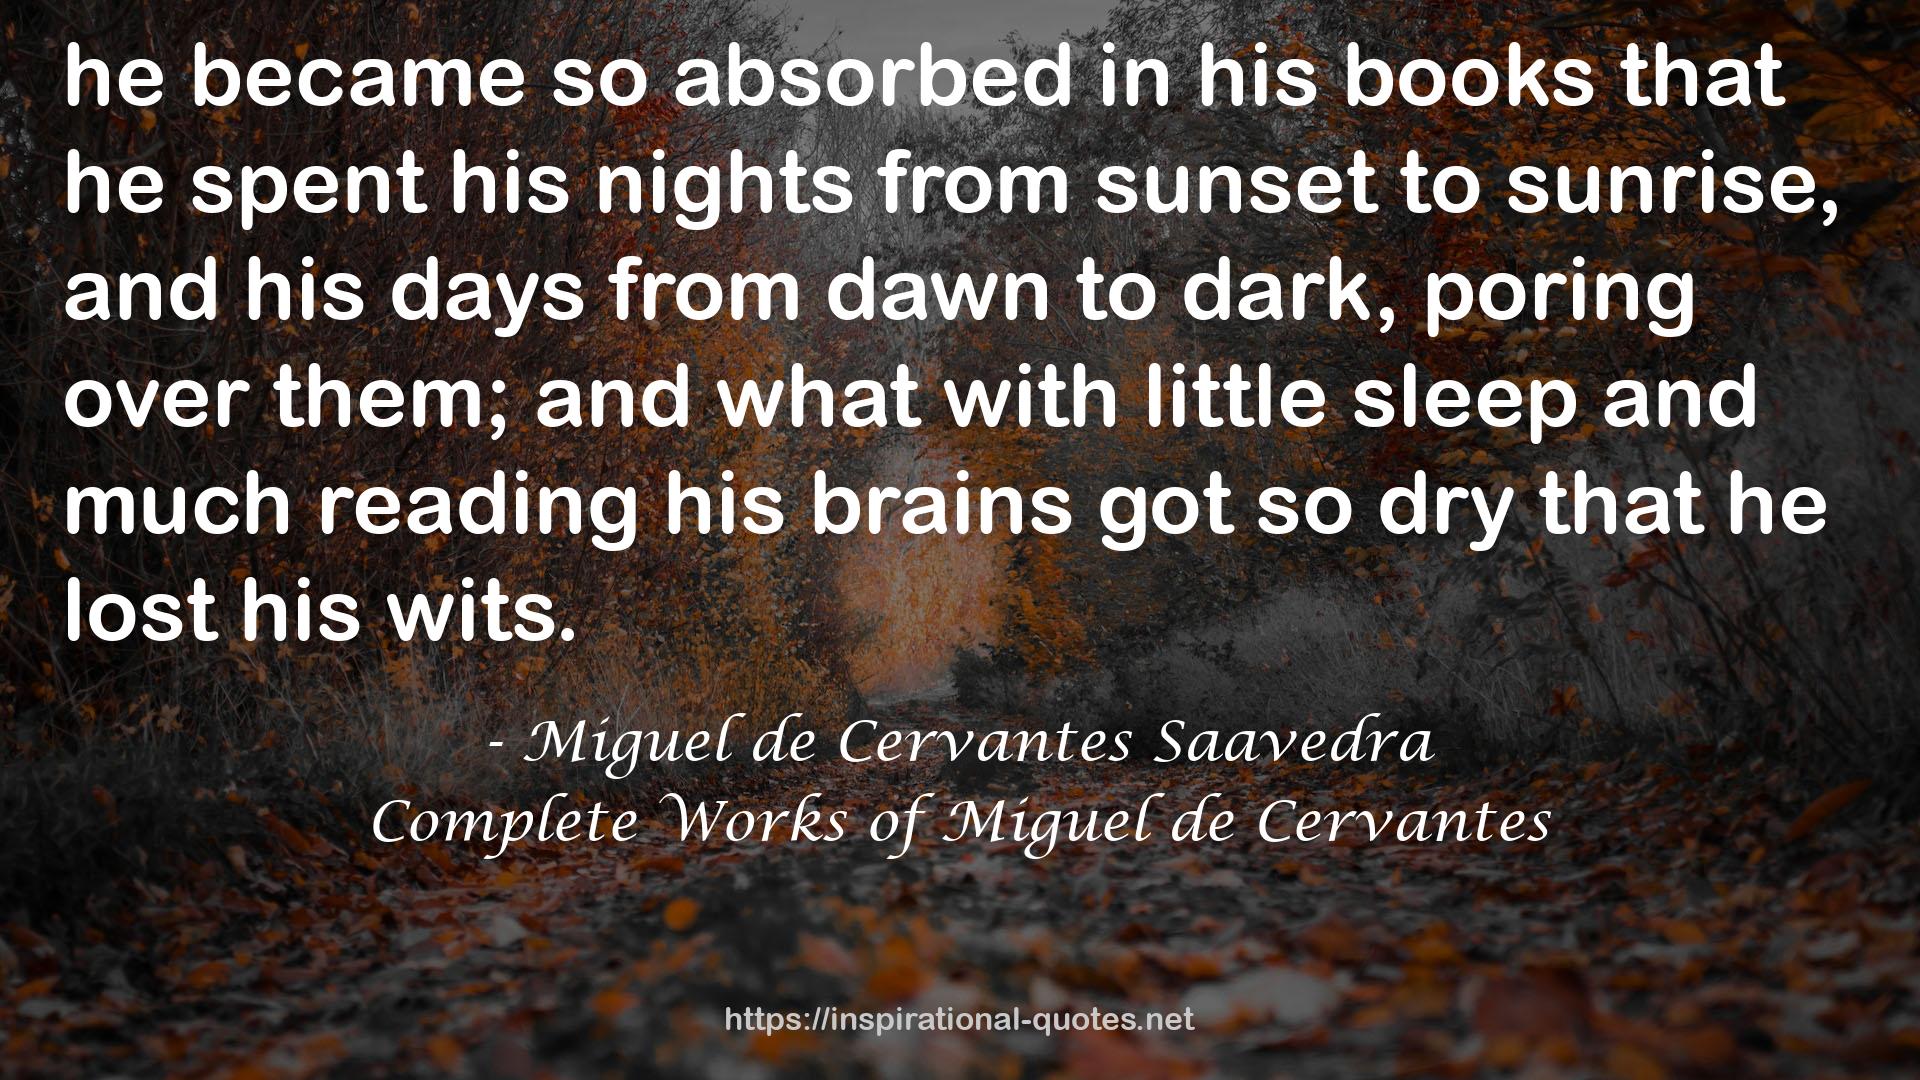 Complete Works of Miguel de Cervantes QUOTES